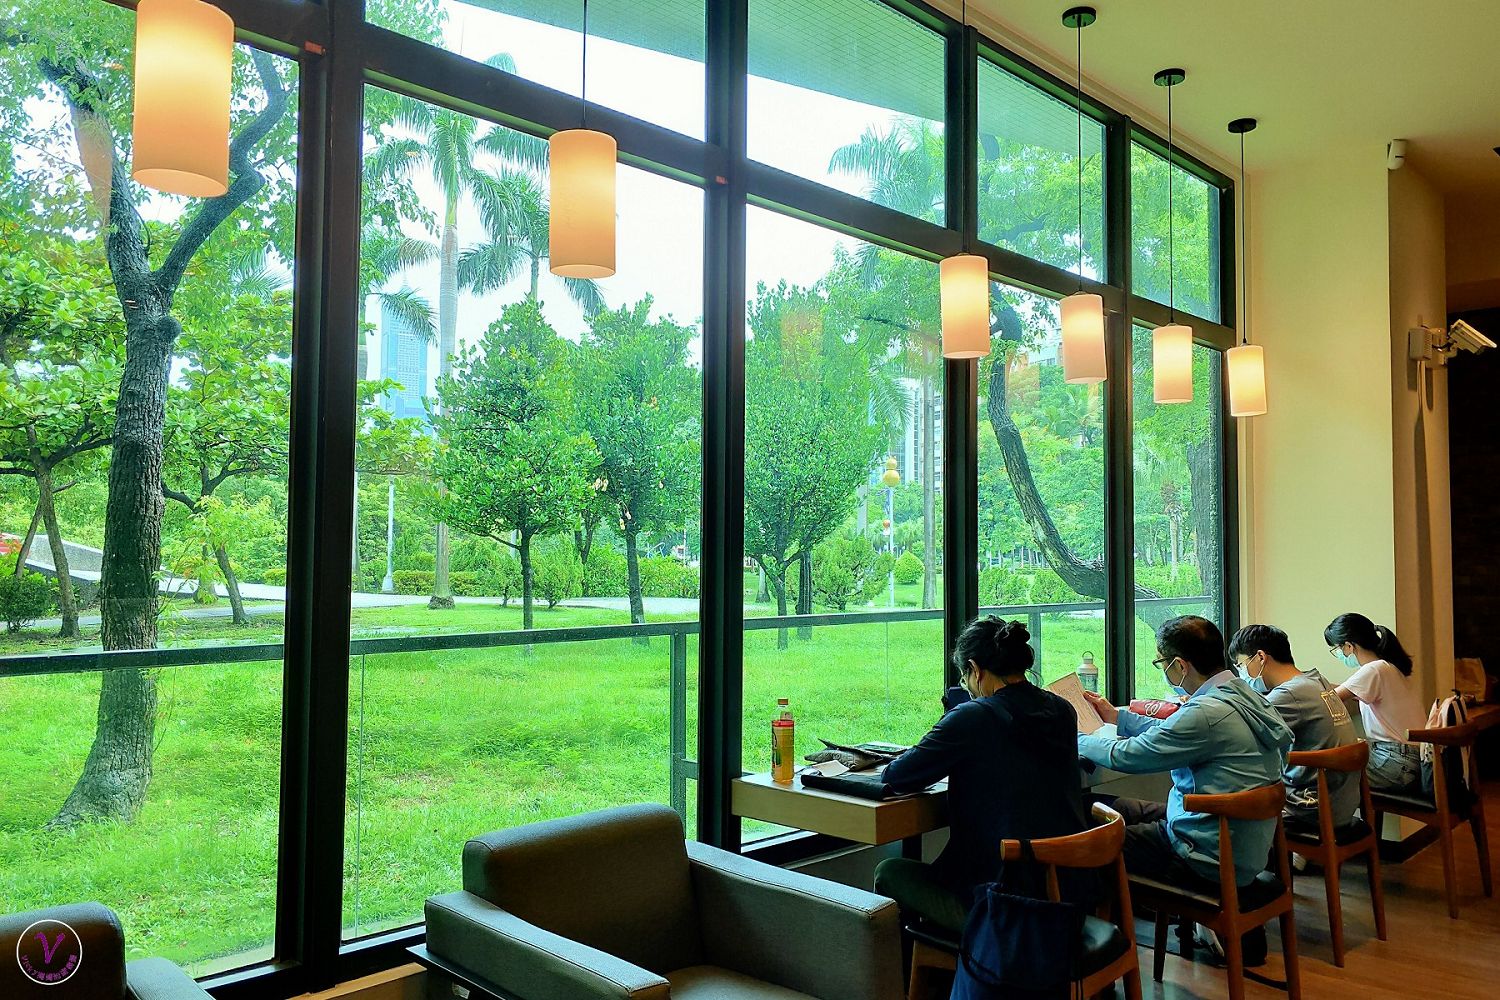 高雄景點︱中央公園就是我的圖書館，李科永紀念圖書館如咖啡館般舒適，窗外一片綠意盎然令人感覺舒暢